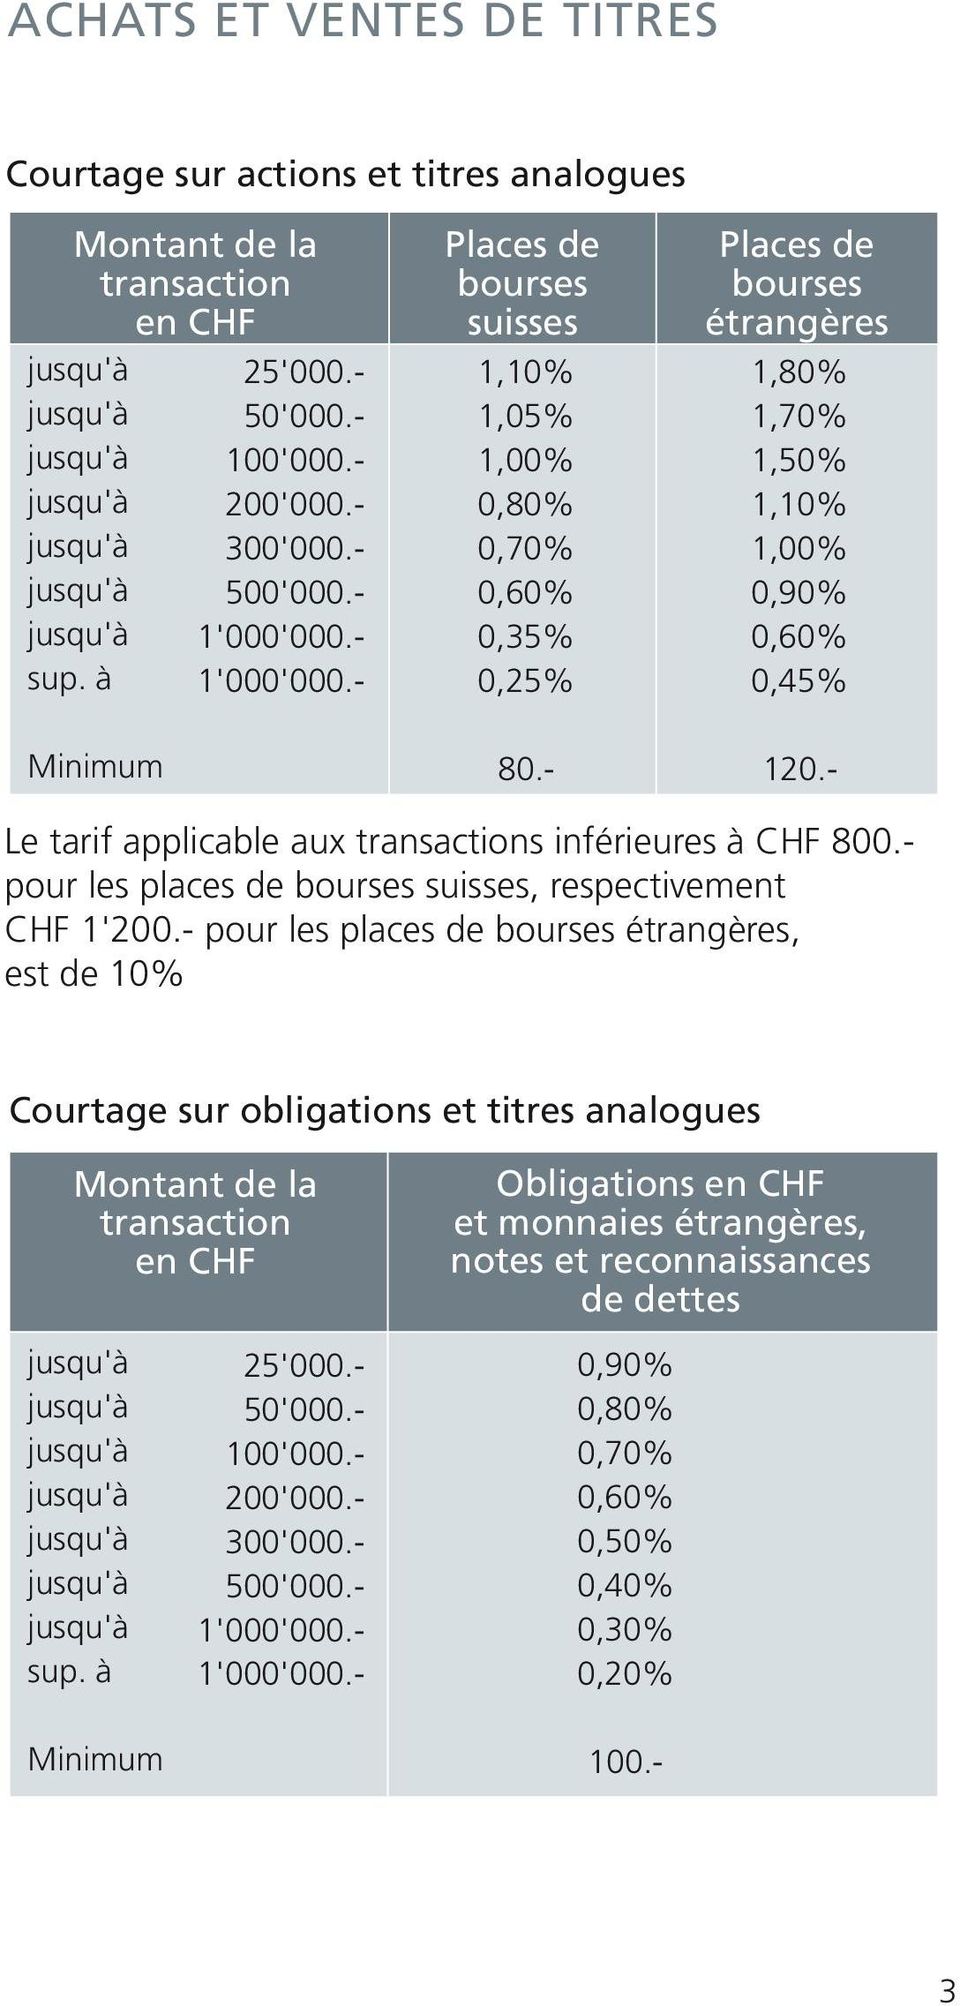 - Le tarif applicable aux transactions inférieures à CHF 800.- pour les places de bourses suisses, respectivement CHF 1'200.